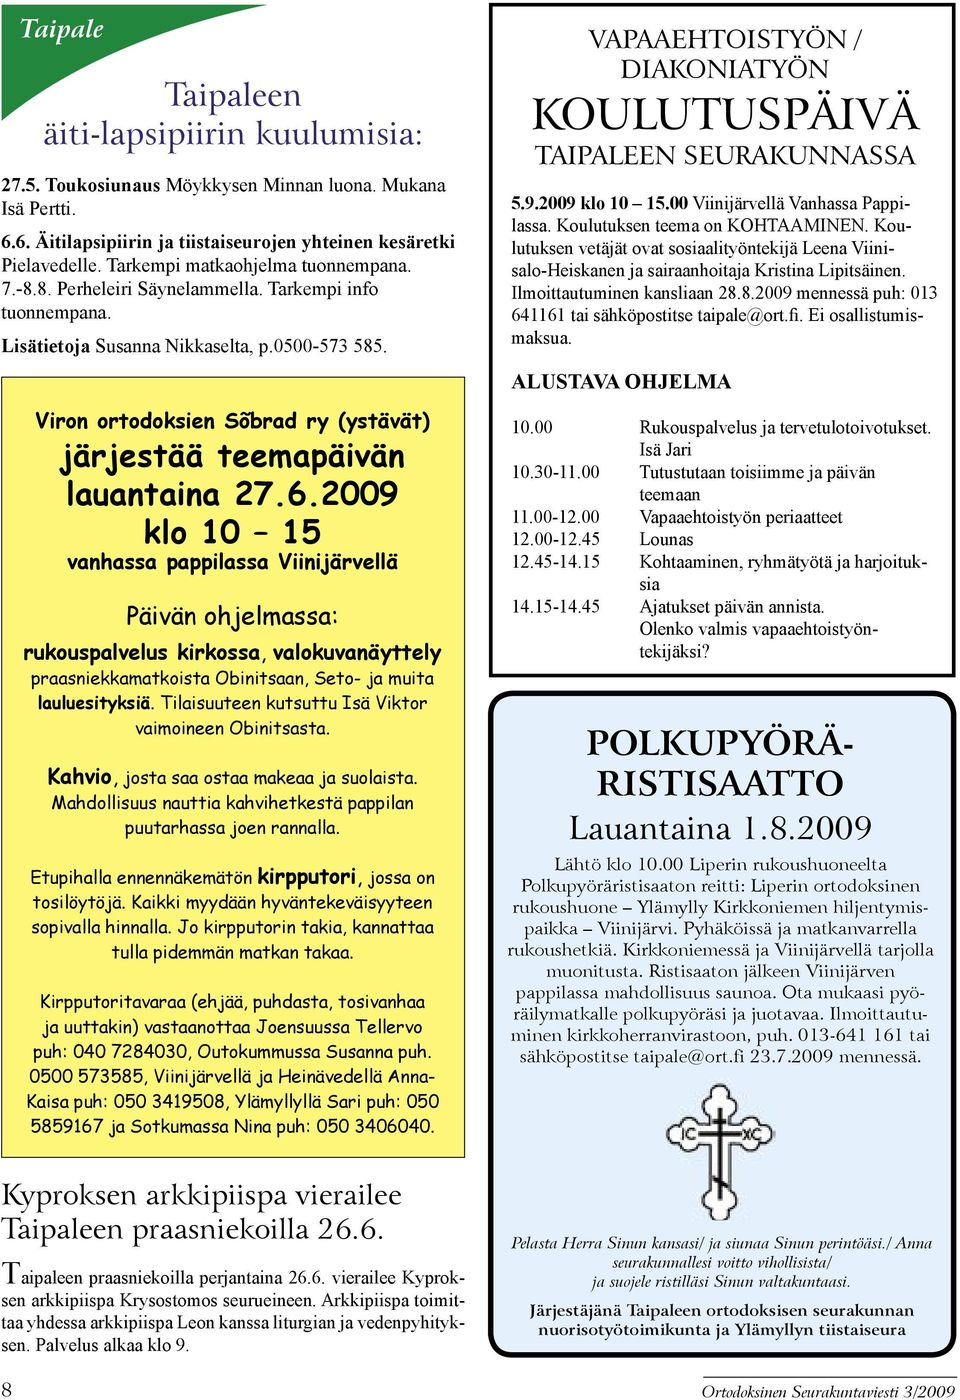 Viron ortodoksien Sõbrad ry (ystävät) järjestää teemapäivän lauantaina 27.6.